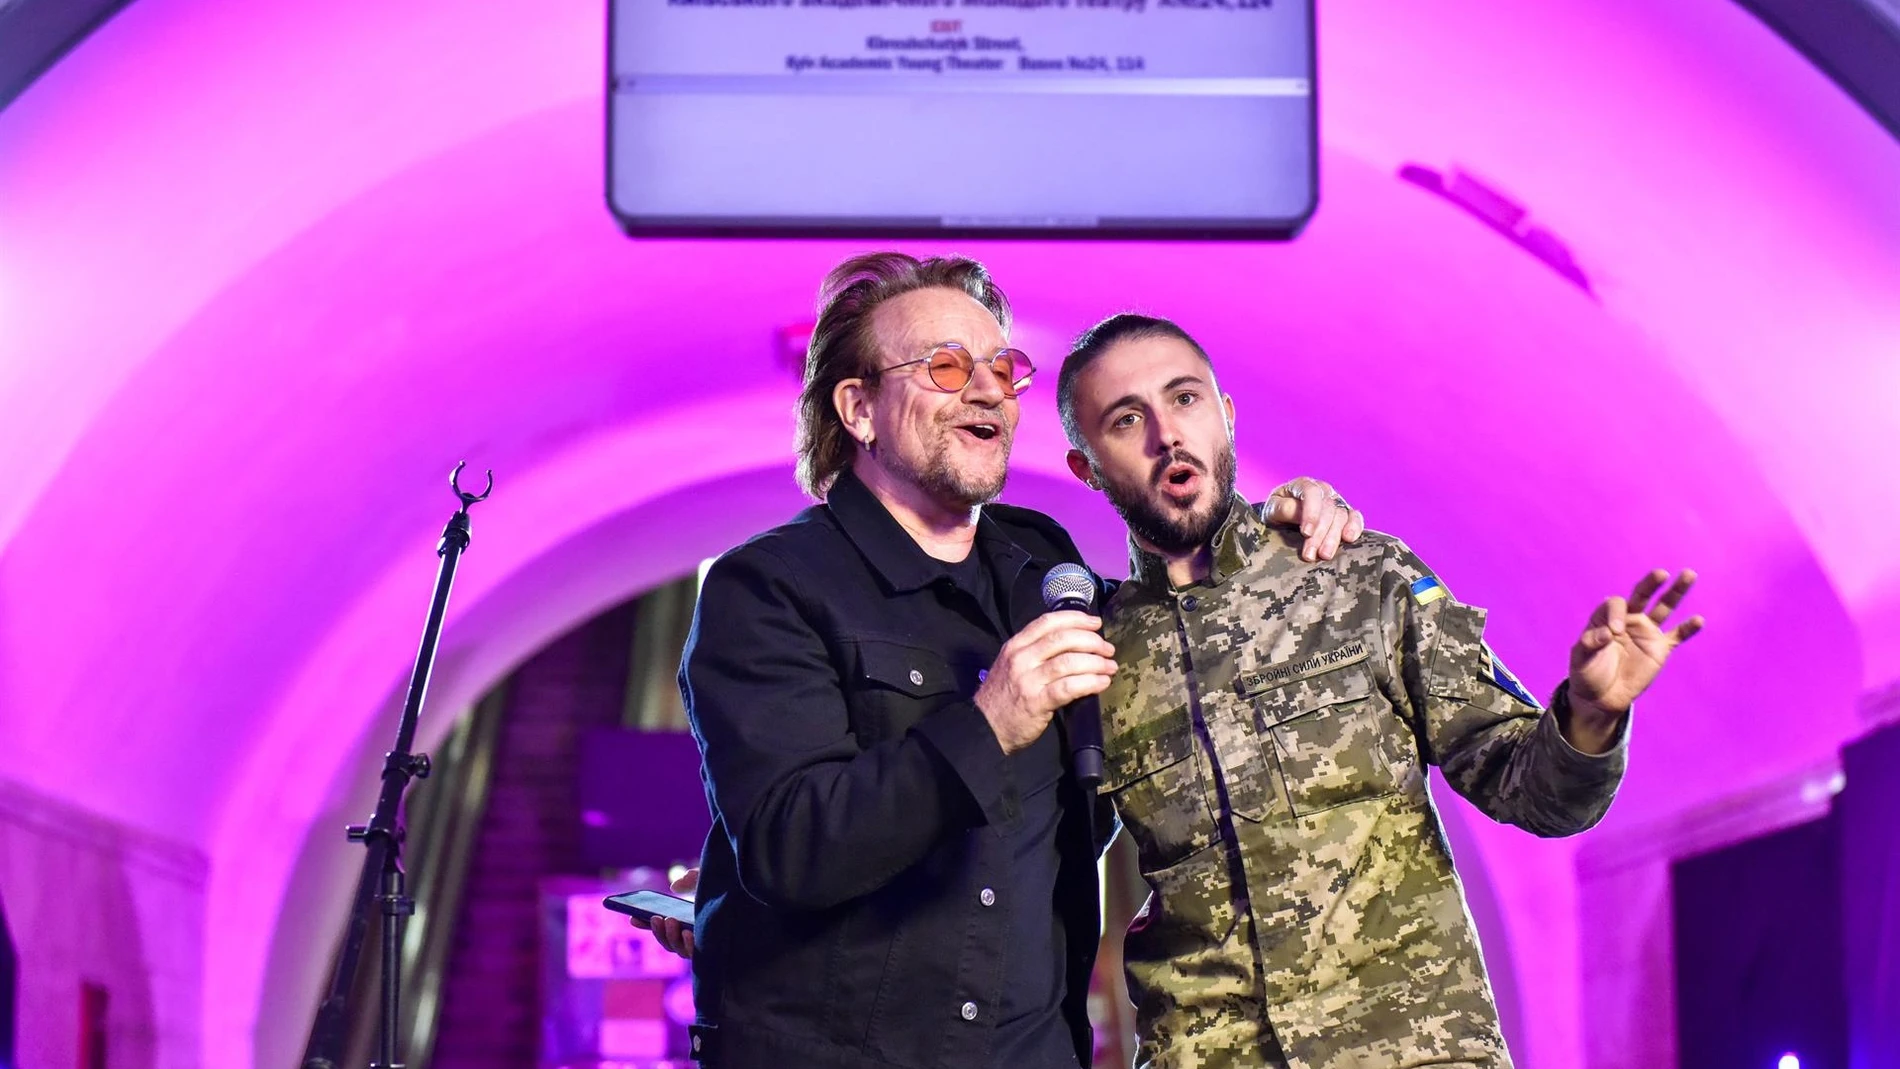 El emotivo concierto de Bono y The Edge en el metro de Kiev por la paz en Ucrania